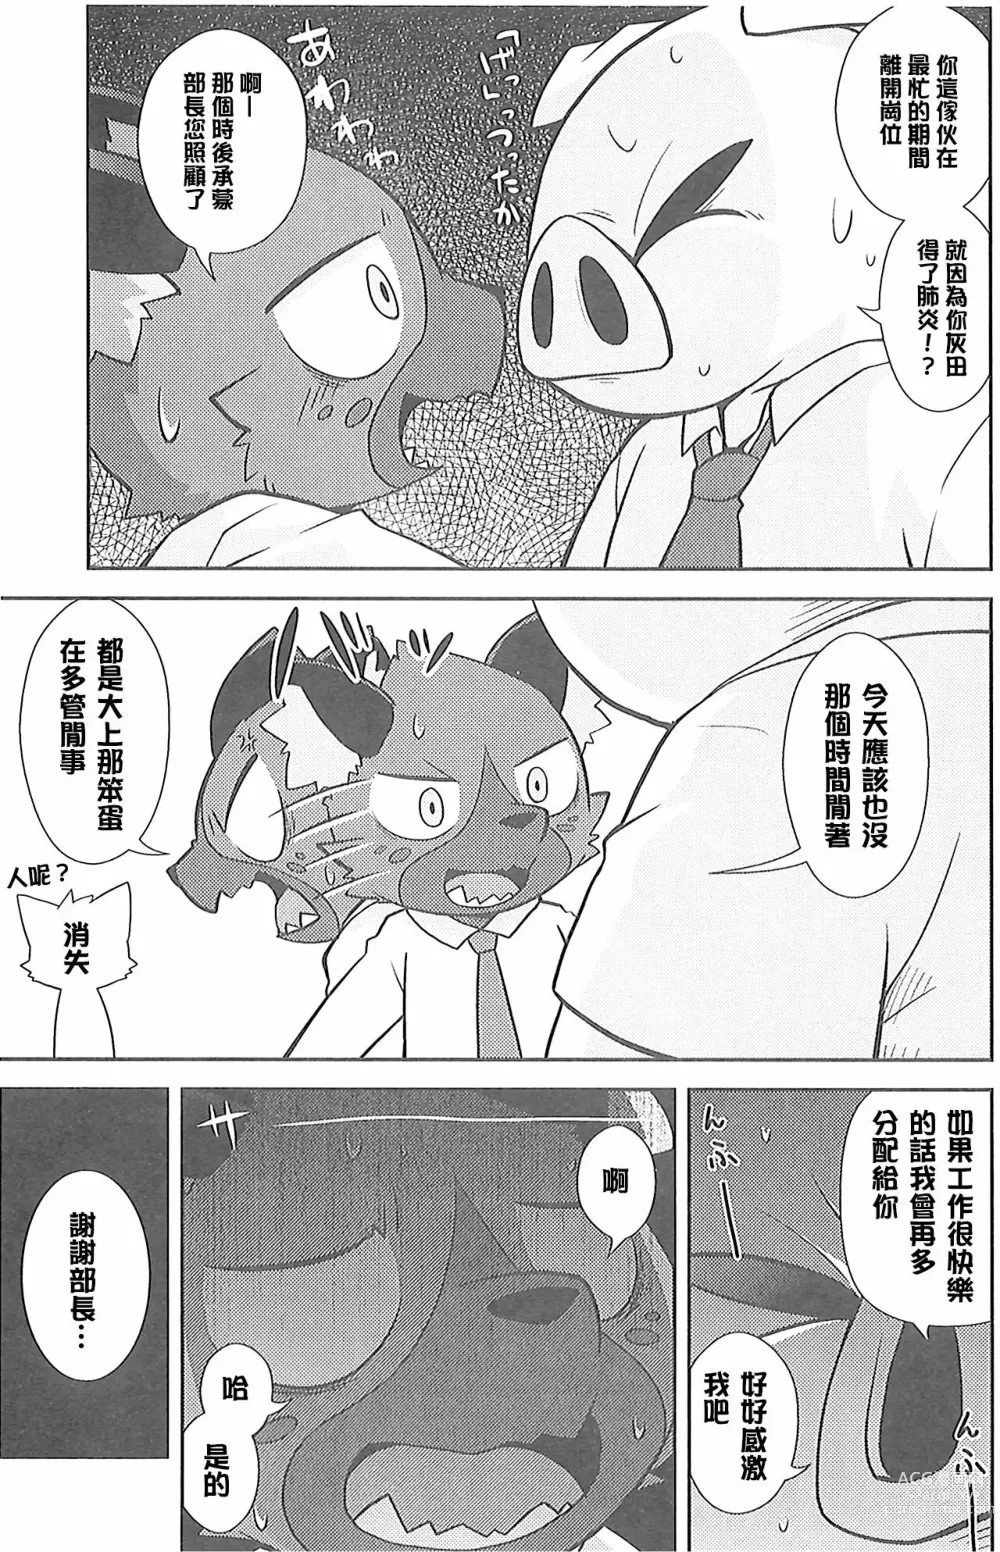 Page 6 of doujinshi 午夜的工作